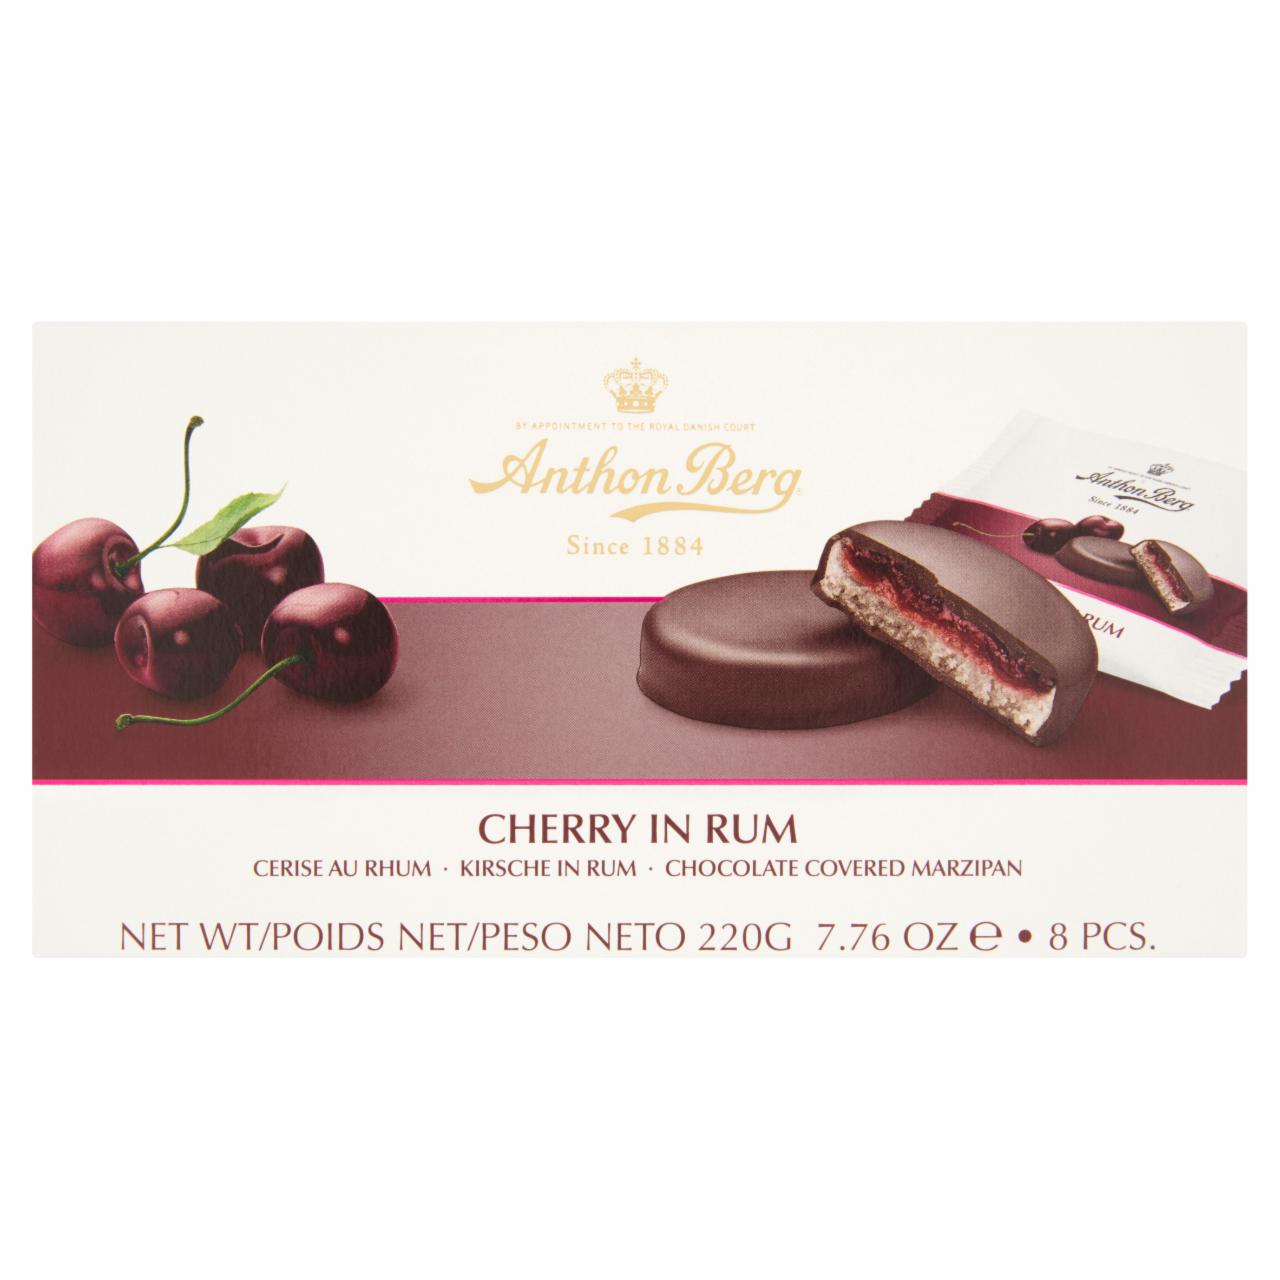 Képek - Anthon Berg csokoládé marcipánnal és rumban lévő cseresznyével töltve 8 db 220 g